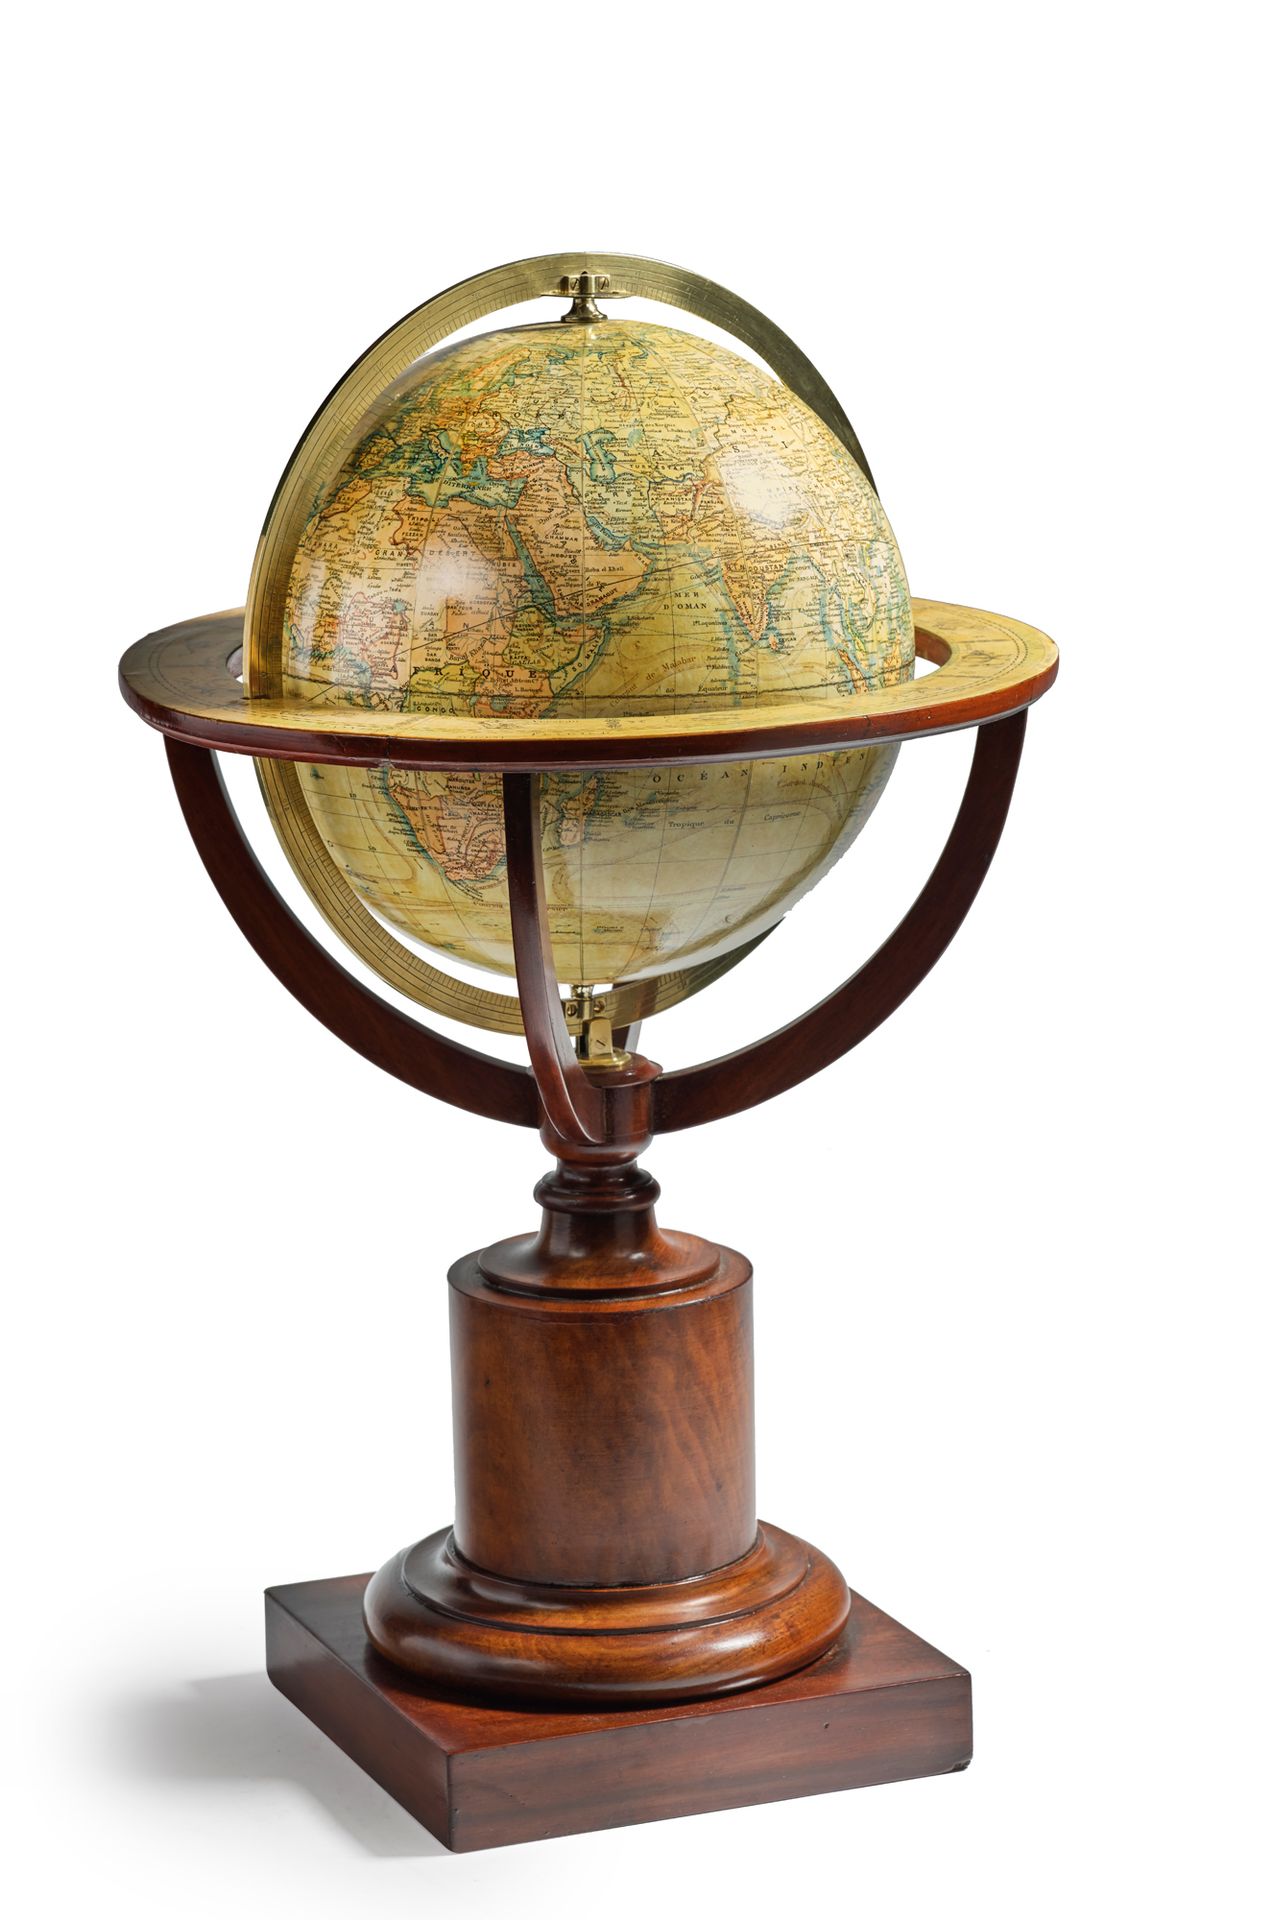 Null 图书馆地球仪
刻度的黄铜子午线圈。转动的桃花心木底座。地球仪上有一个圆拱形的签名 "J.LEBEGUE à Paris"
法国，19世纪末